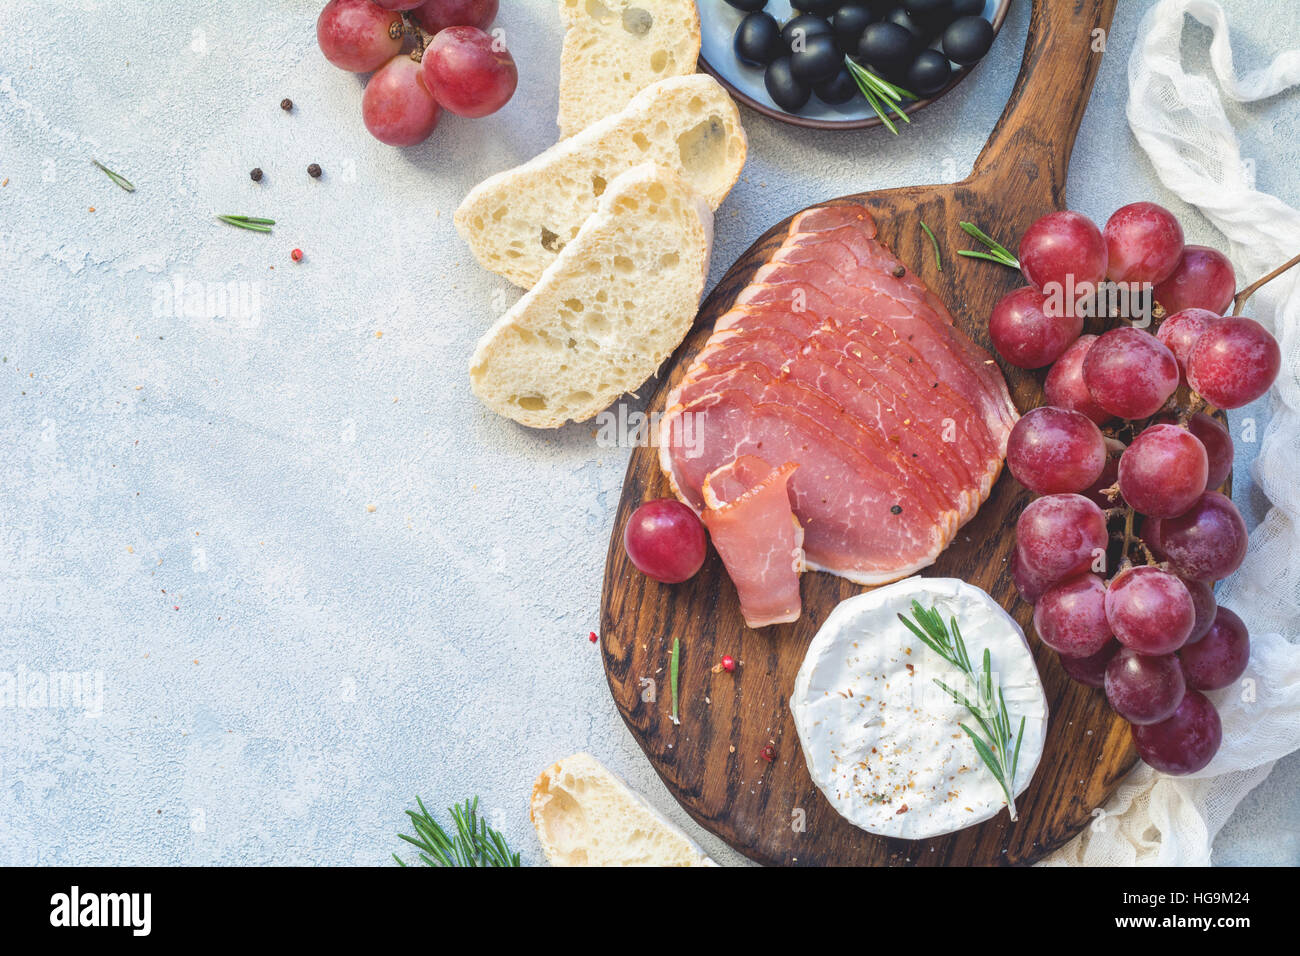 Piatto antipasto con baguette fresche, salumi, uve, il formaggio e le olive. Antipasti o il concetto di tapas. Vista superiore, spazio di copia Foto Stock